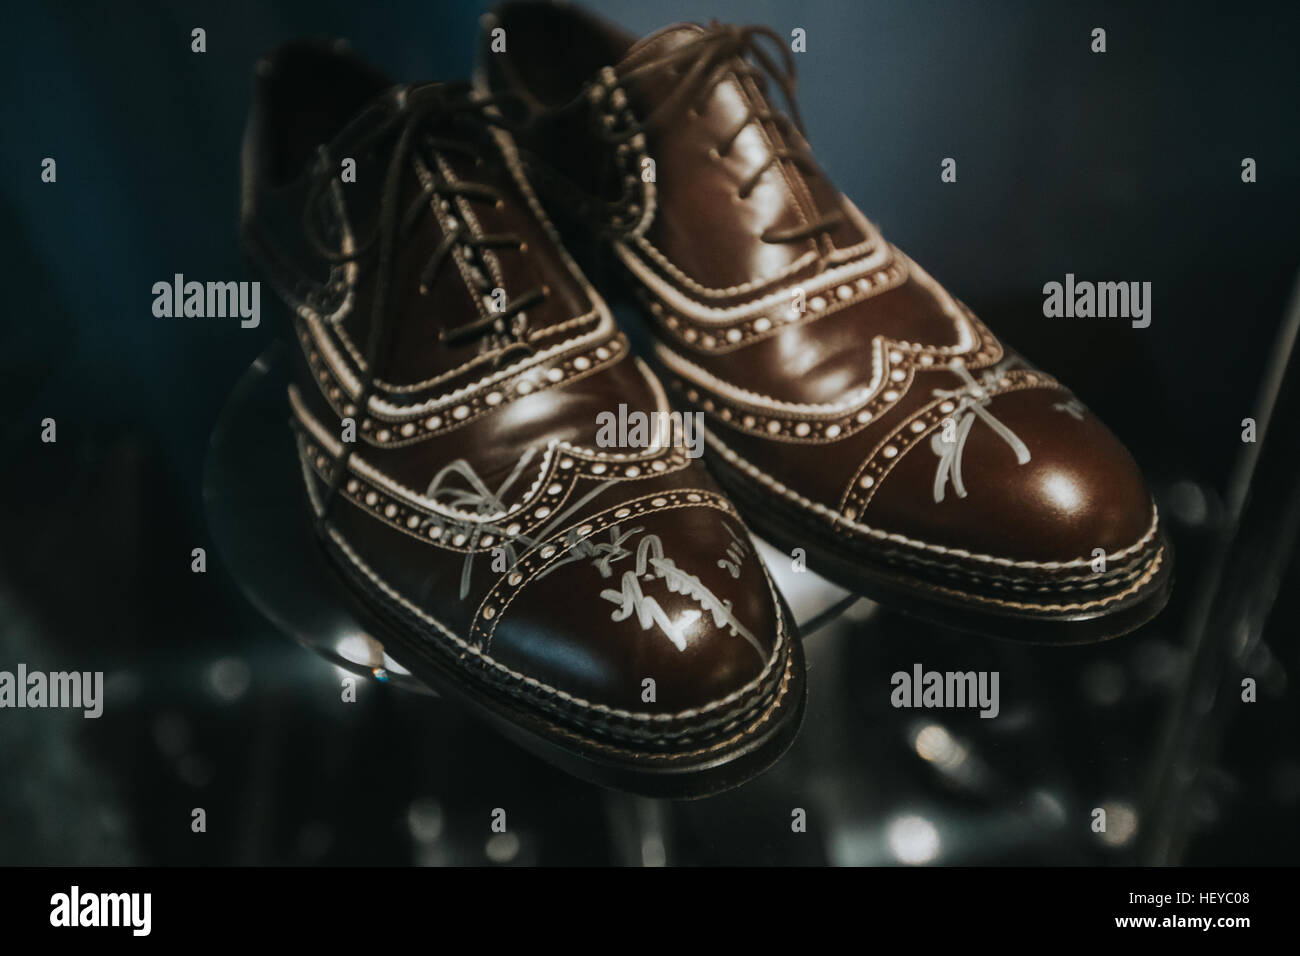 Tony Leung actor de cine chino llevaba este par de zapatos con su autógrafo Foto de stock